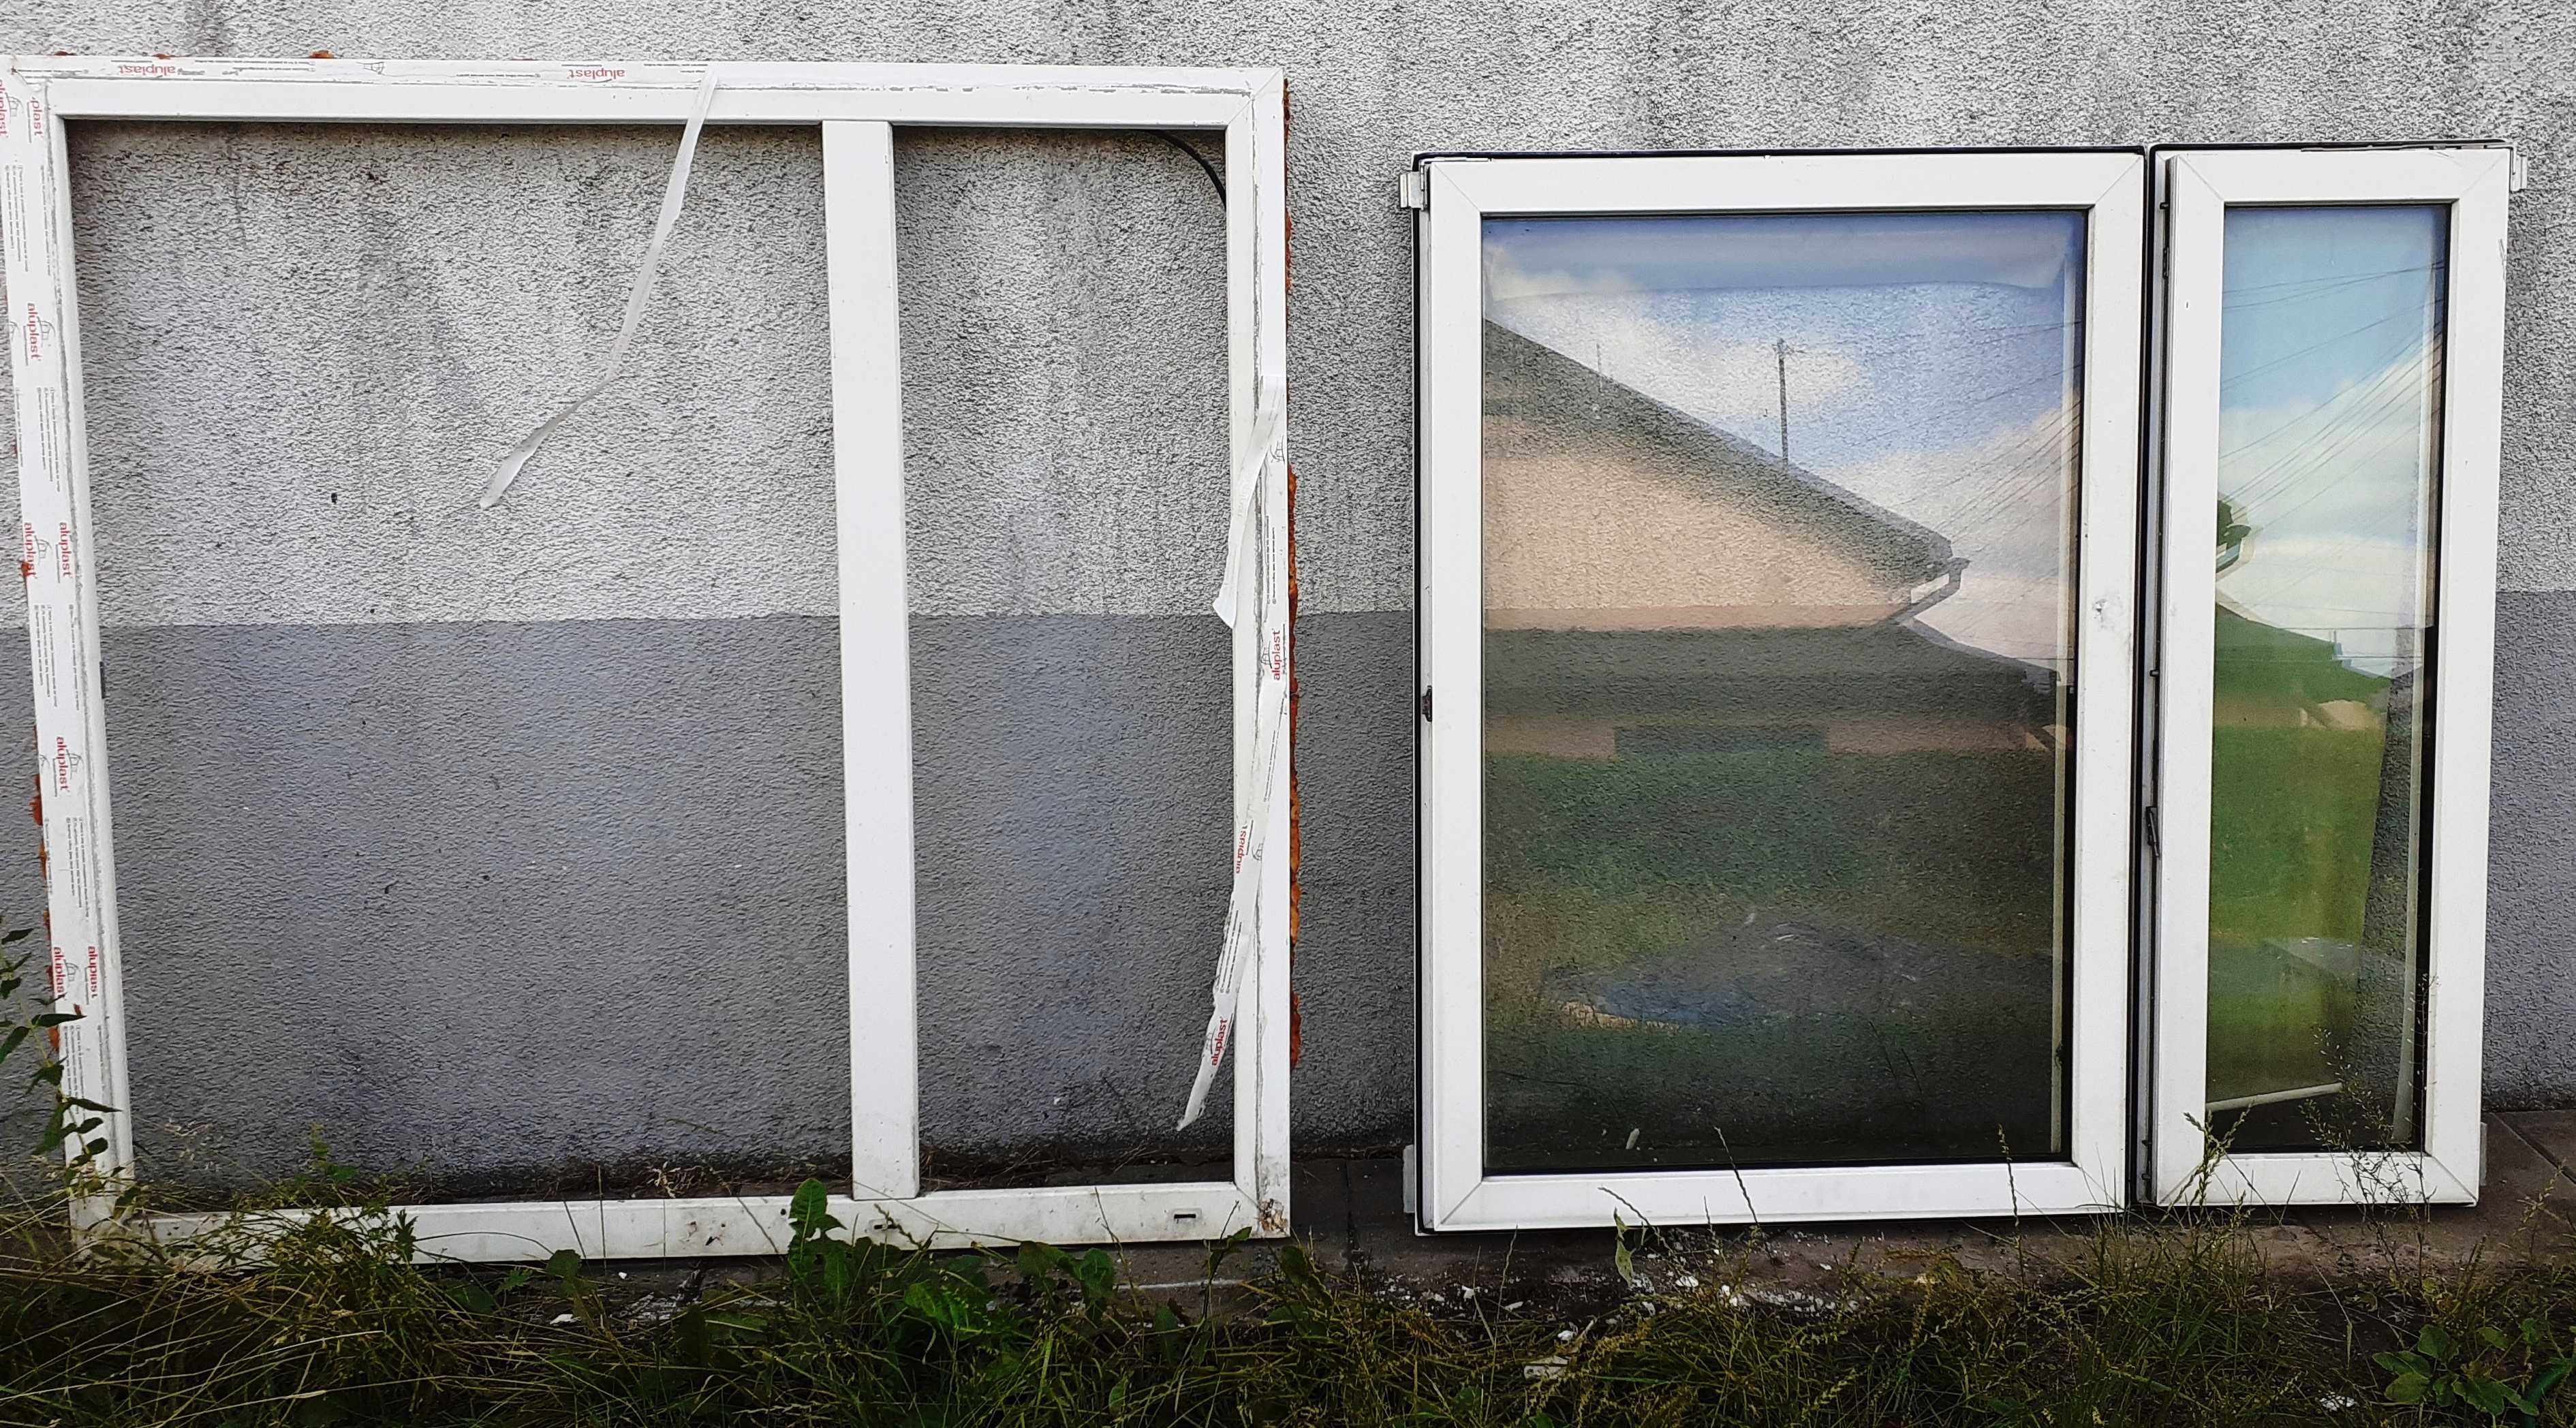 Okno z demontażu